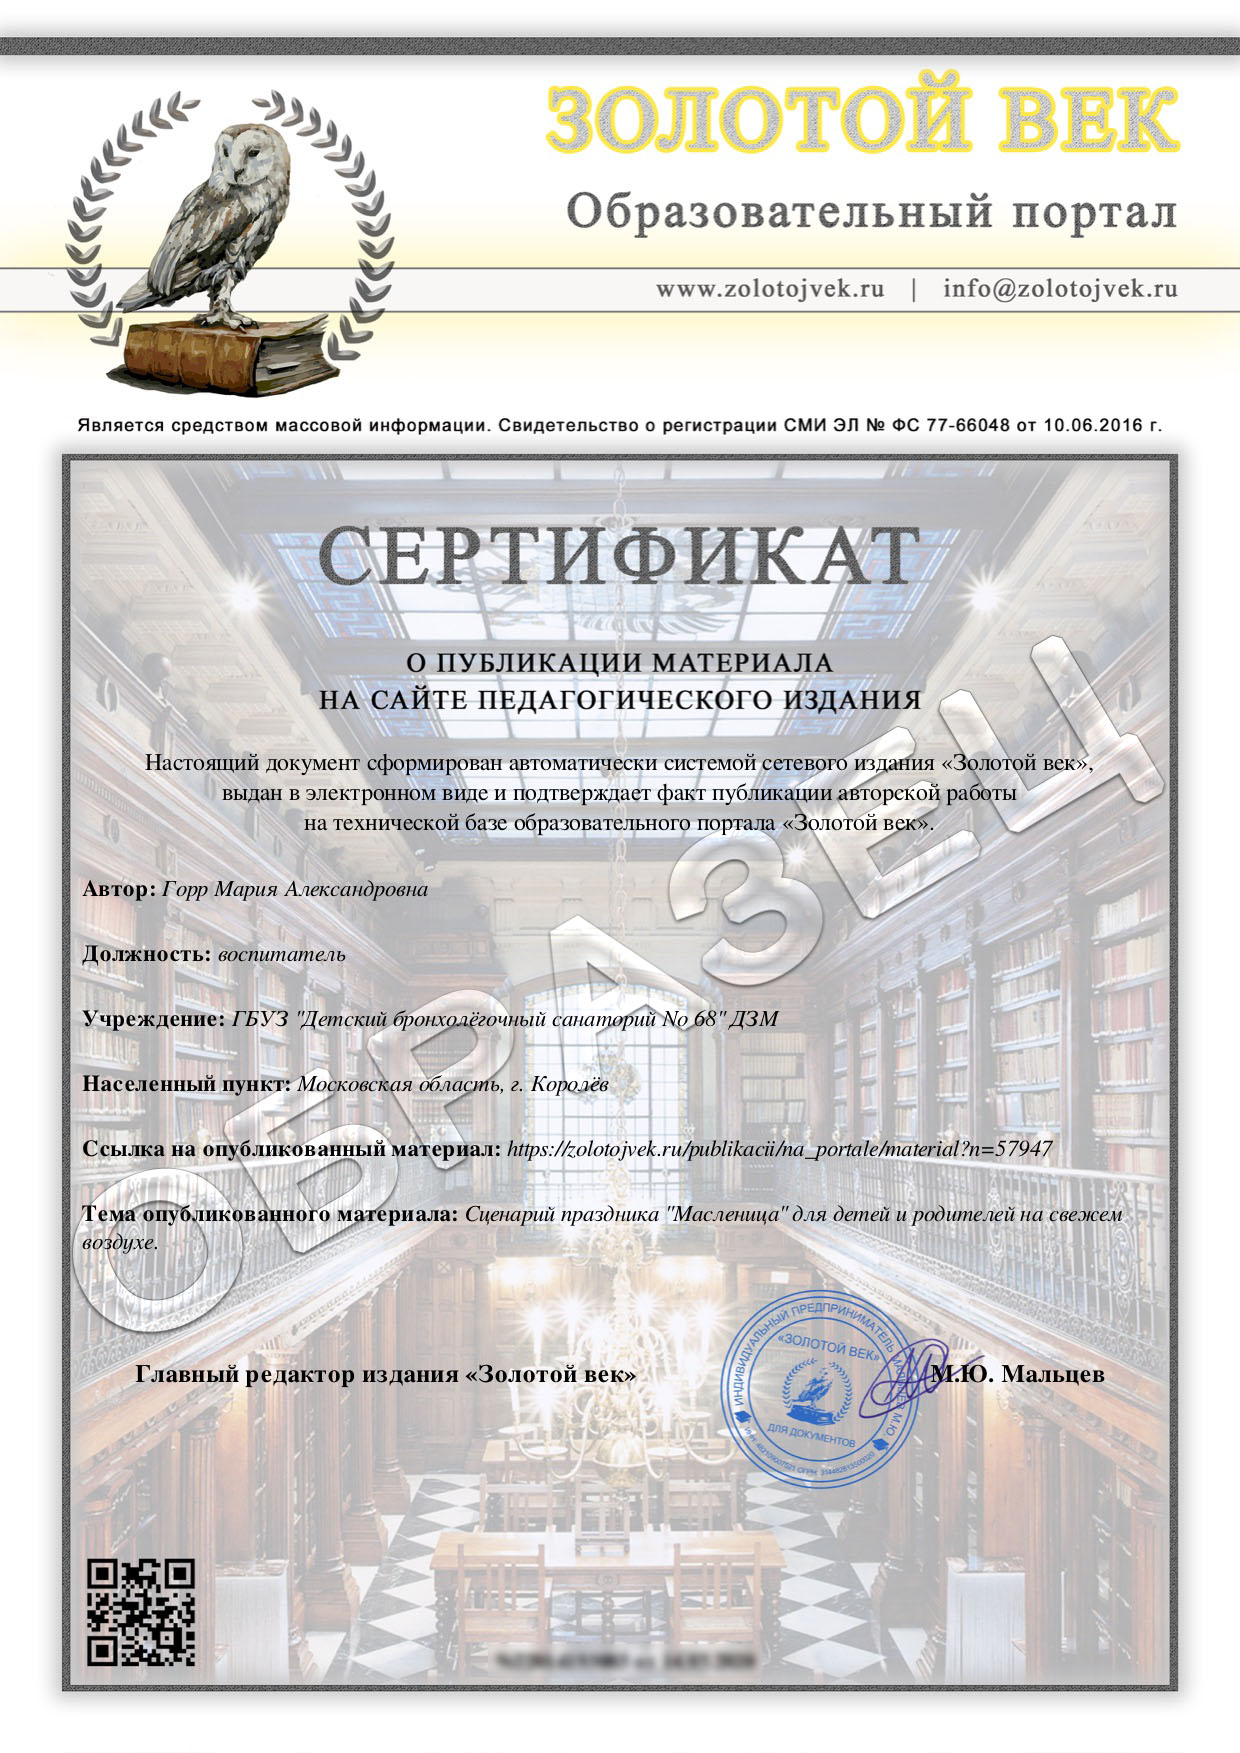 Сертификат. Публикация авторского материала на сайте издания.